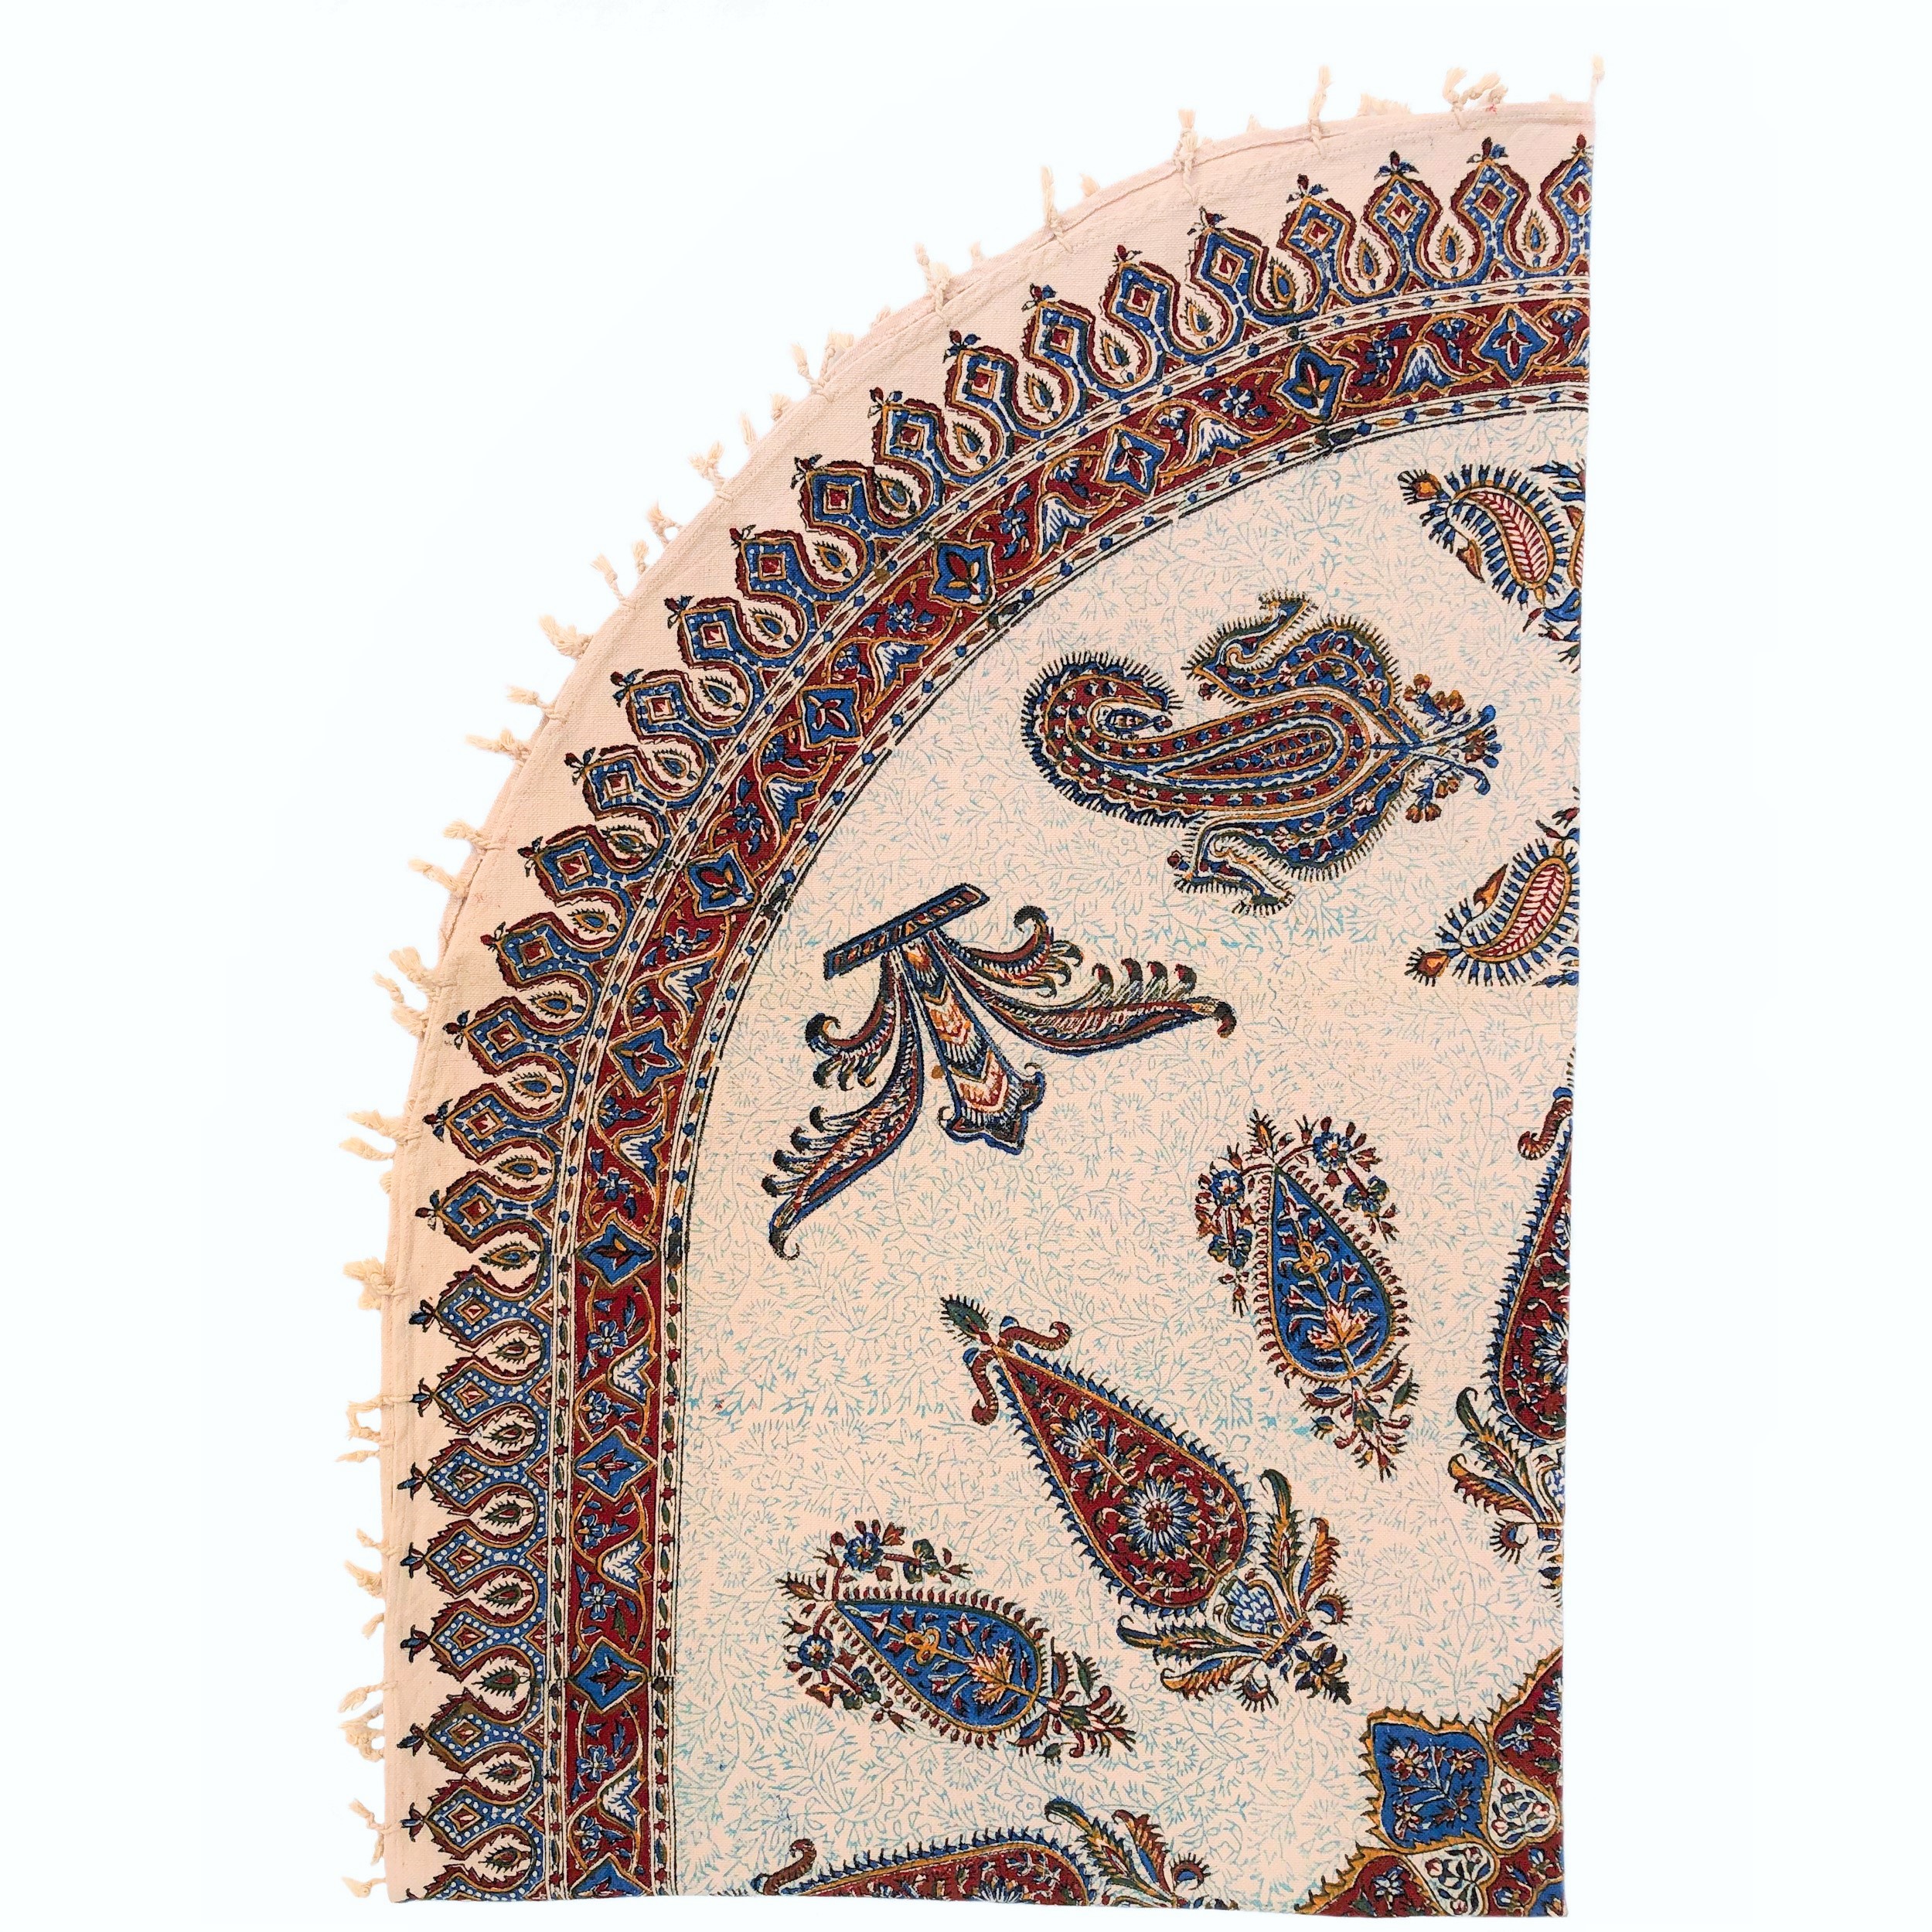 رومیزی قلمکار ممتاز اصفهان اثر عطريان طرح ترنج مدل G71 سایز150*100سانتیمتر